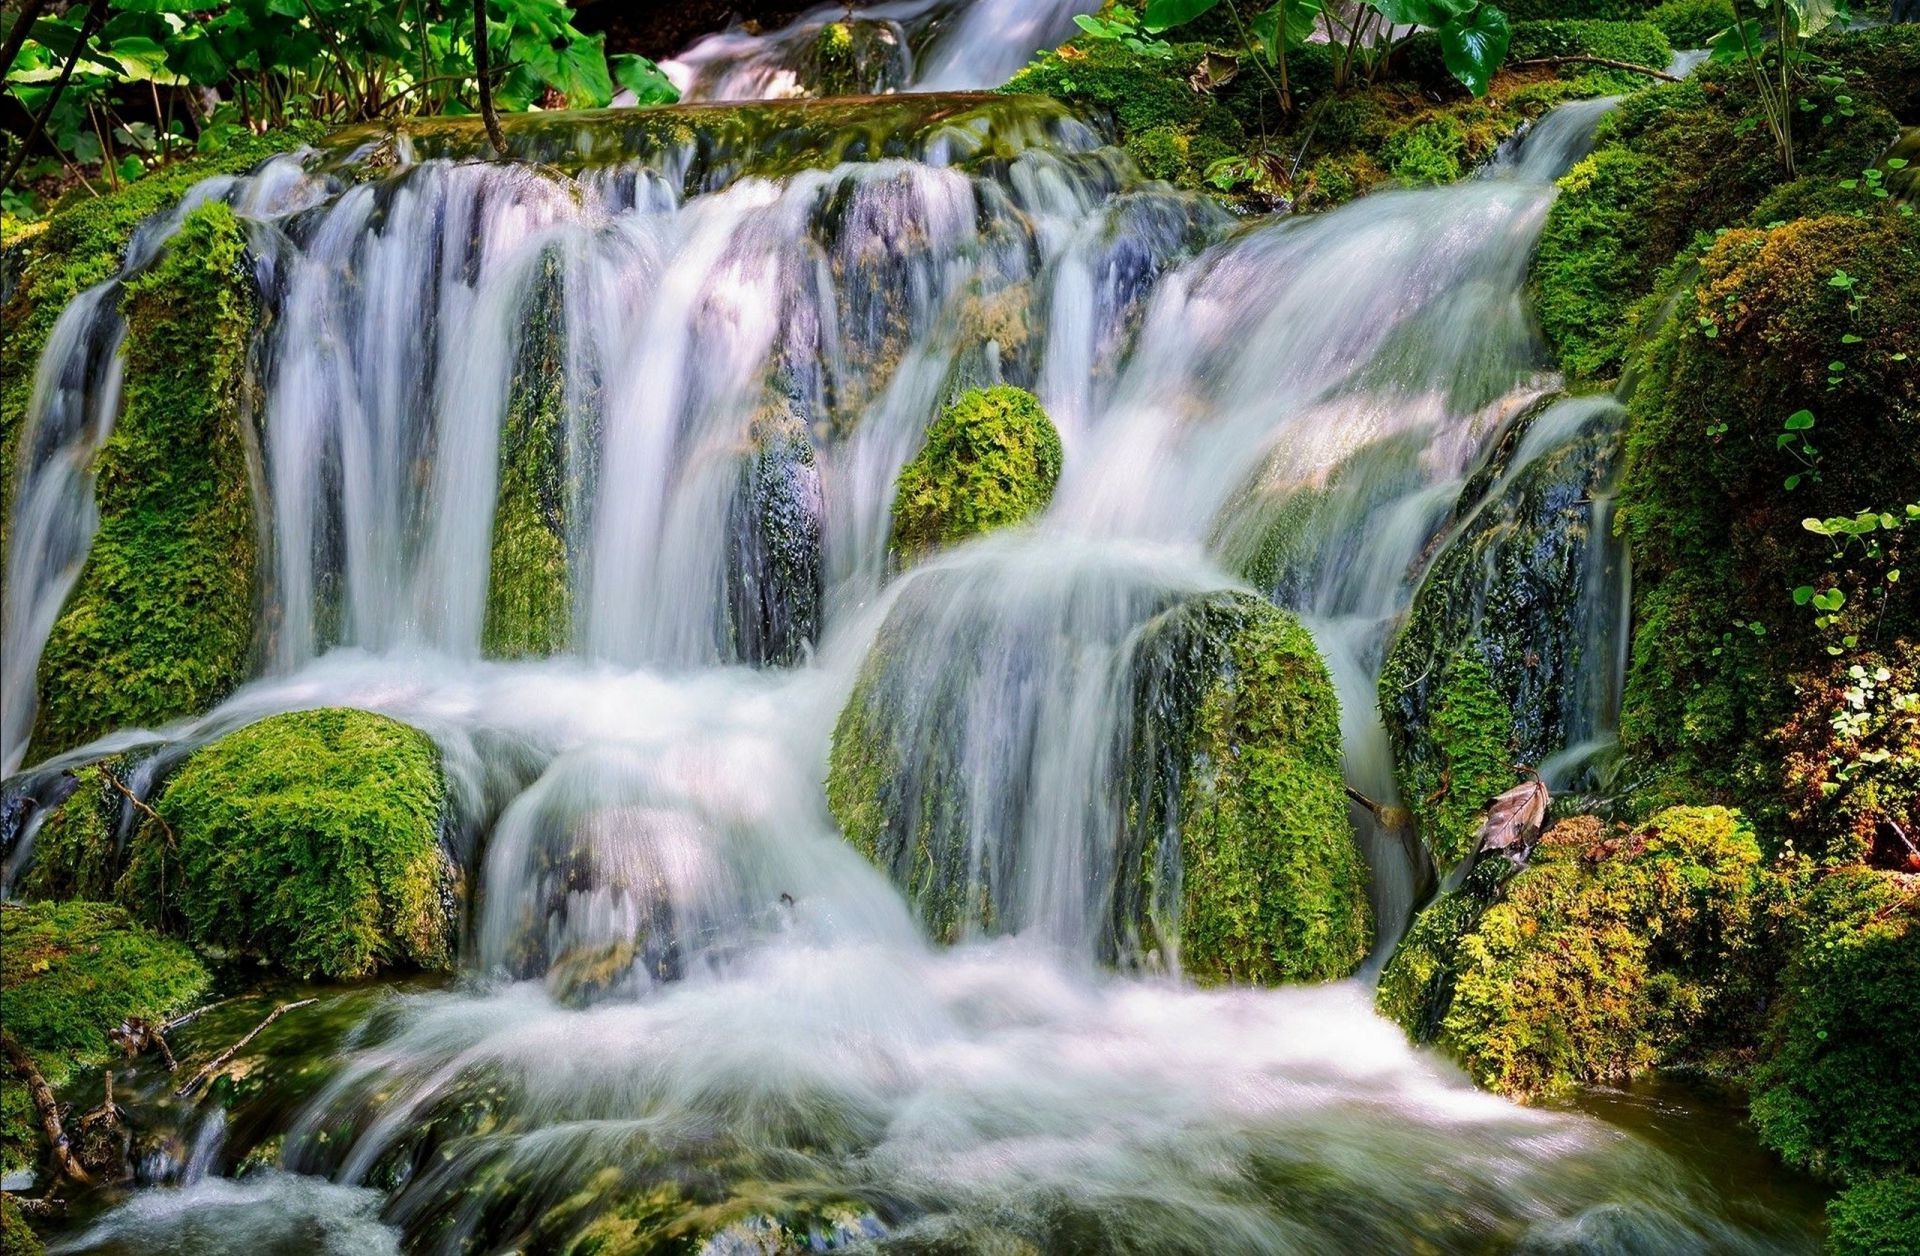 водопады водопад воды поток природа каскад мох река осень поток древесины рок крик лист мокрый камень пейзаж дикий всплеск парк